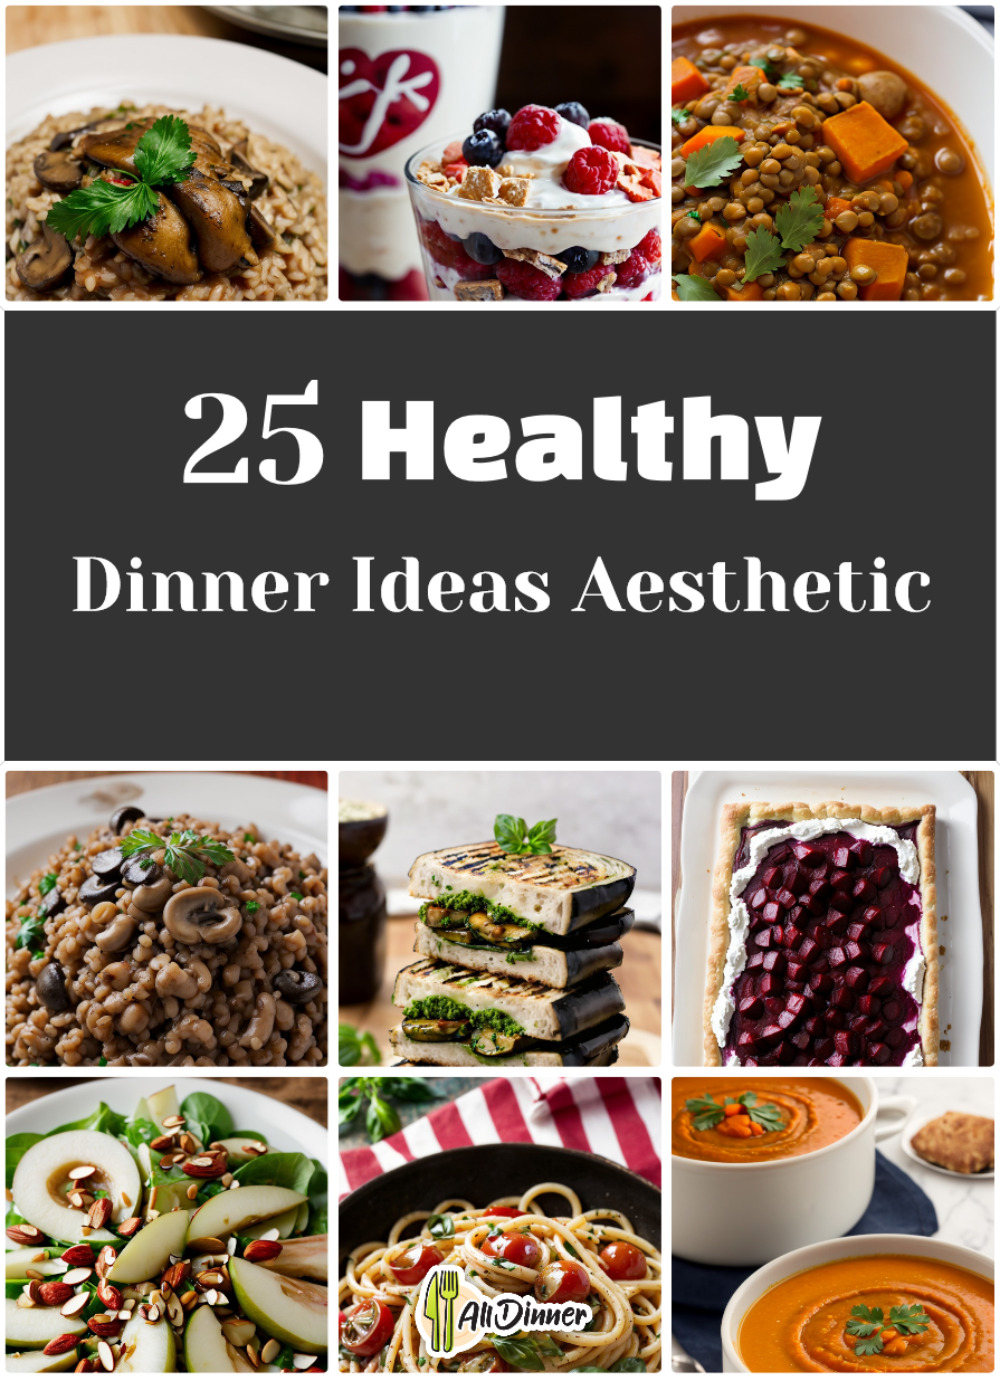 25 Healthy Dinner Ideas Aesthetic